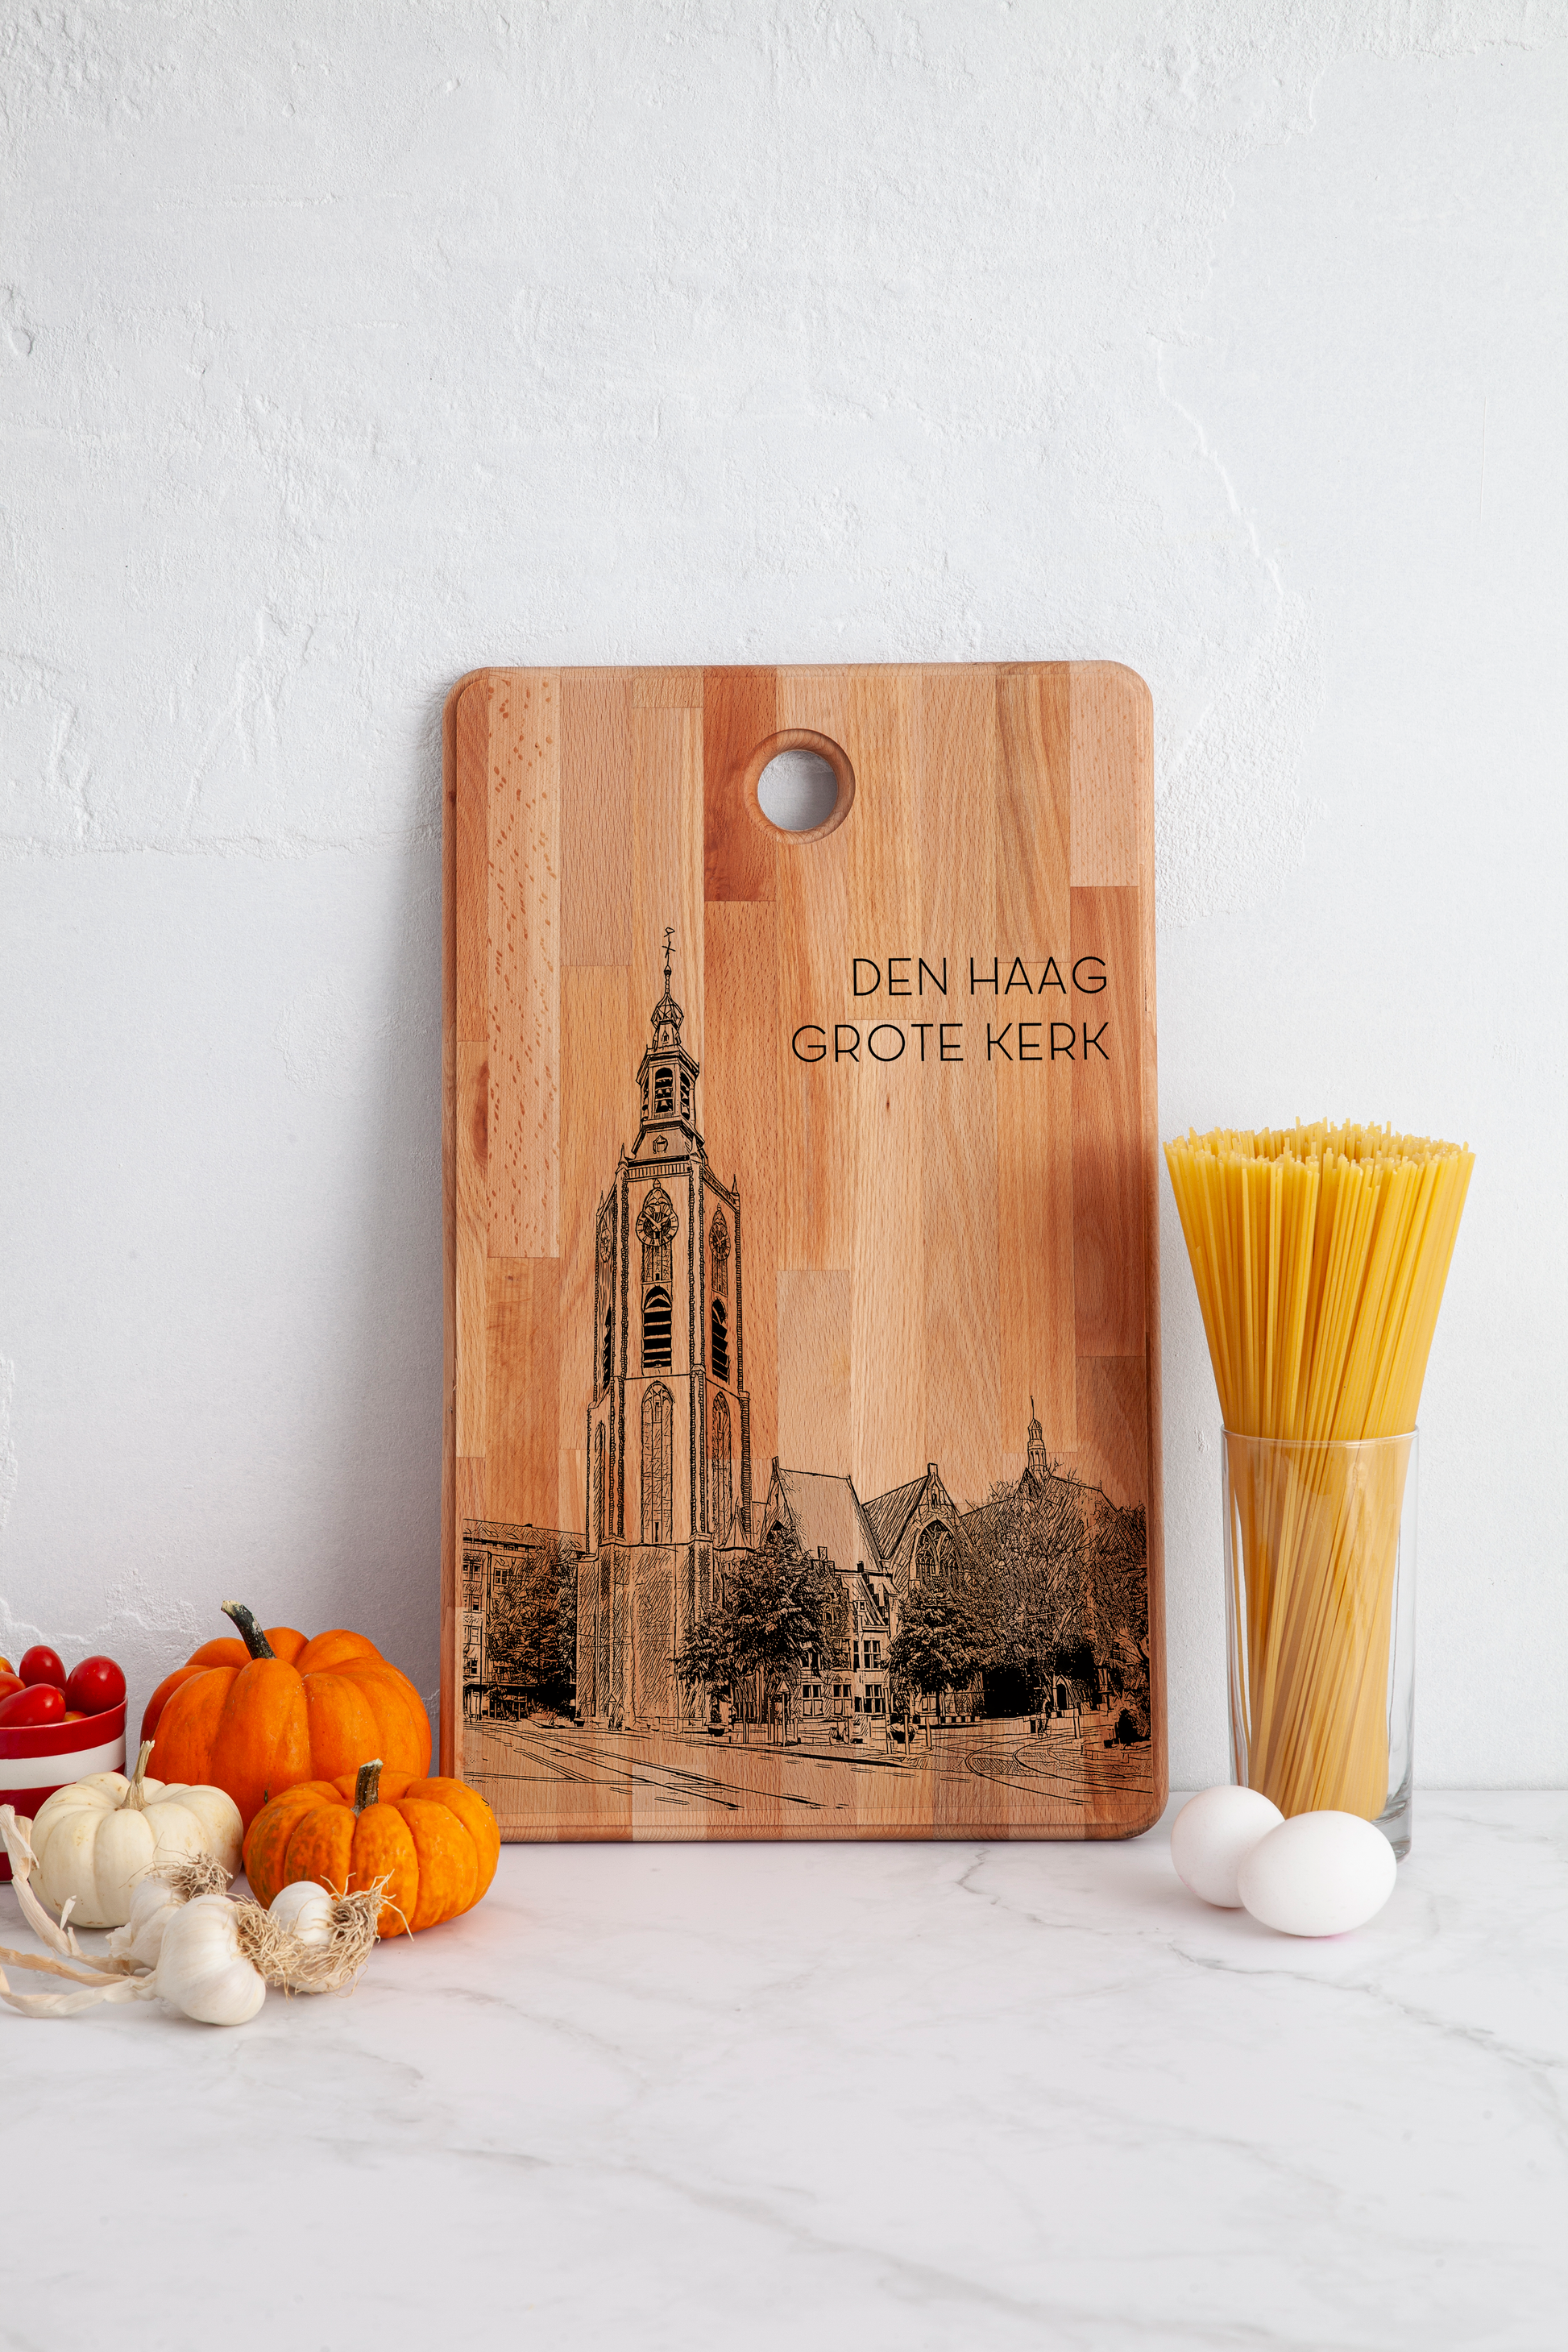 Den Haag, Grote Kerk, cutting board, in kitchen